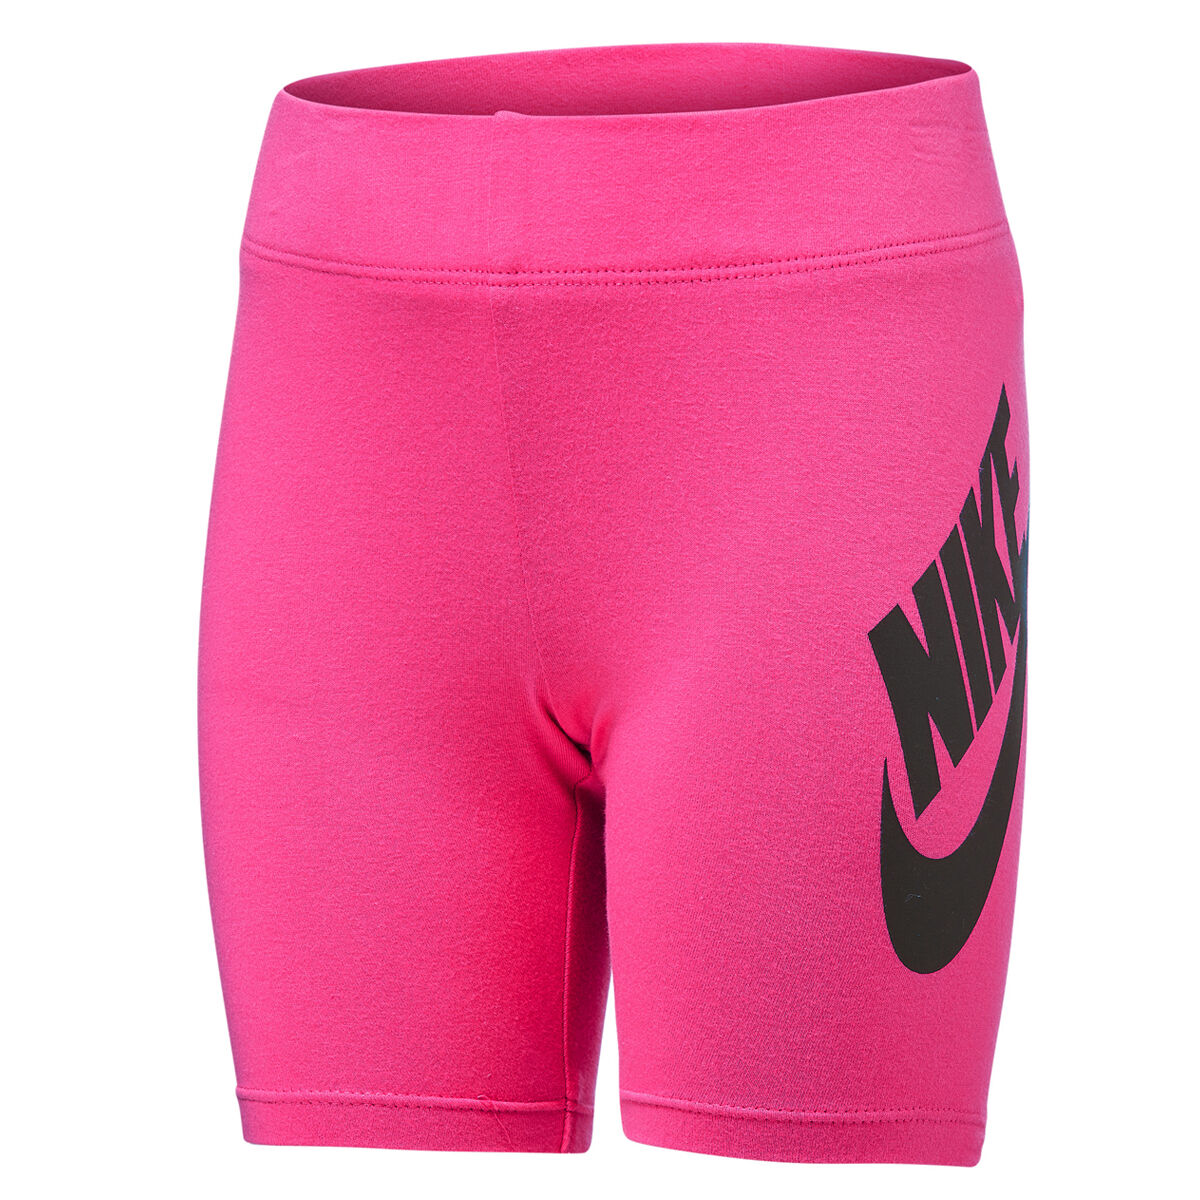 nike bike shorts pink